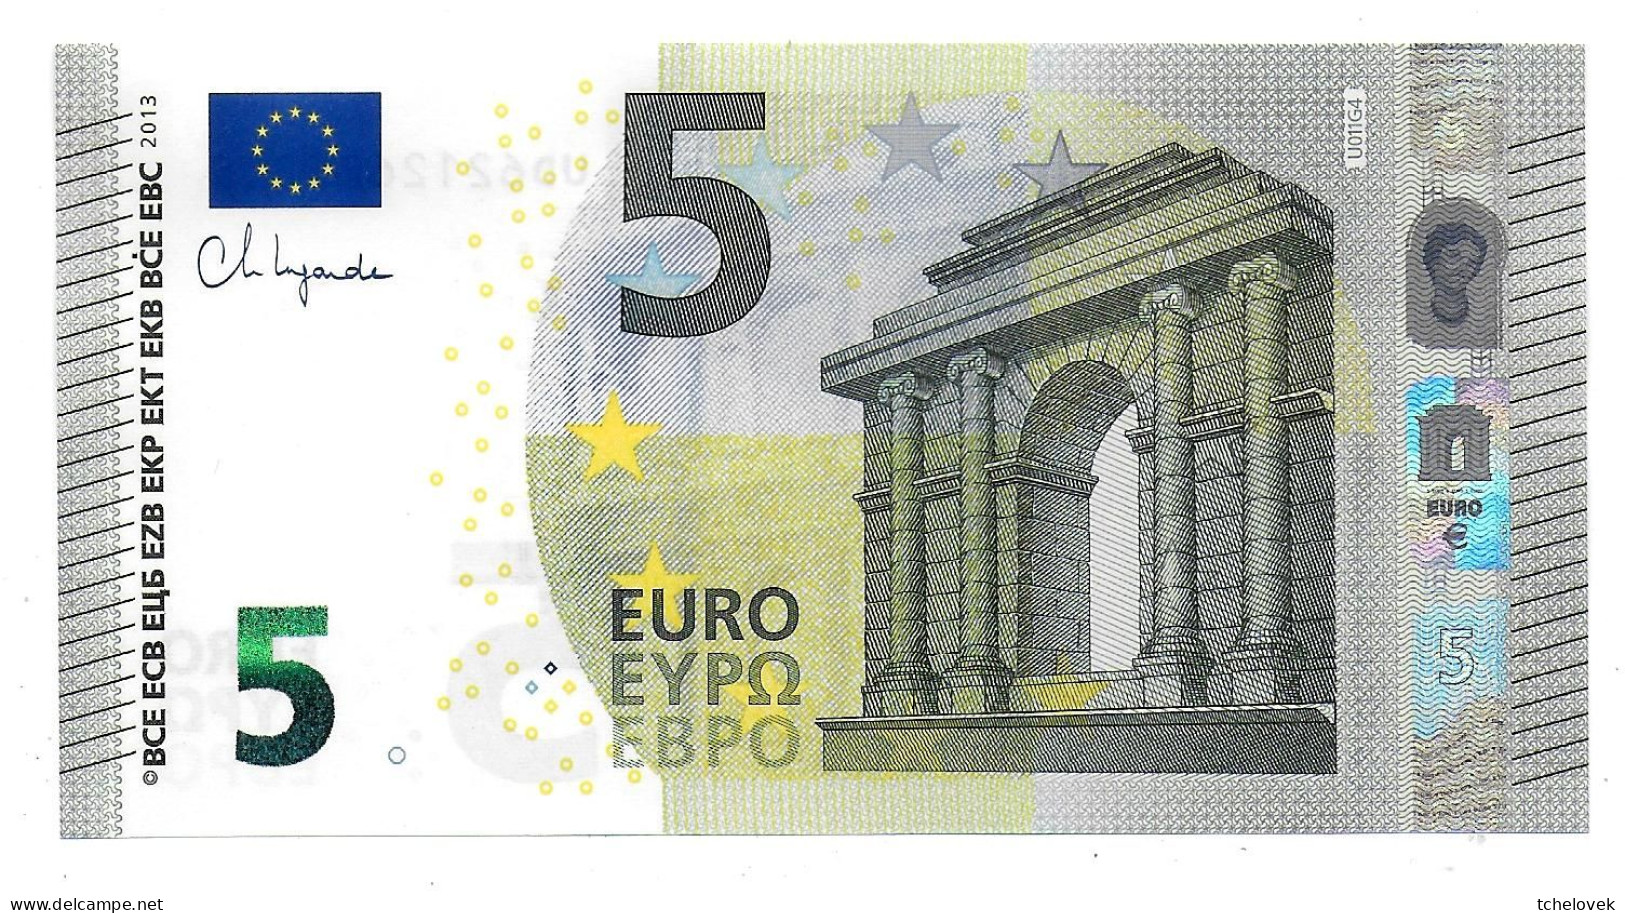 (Billets). 5 Euros 2013 Serie UD, U011G4 Signature 4 Ch. Lagarde N° UD 6212629206 UNC - 5 Euro